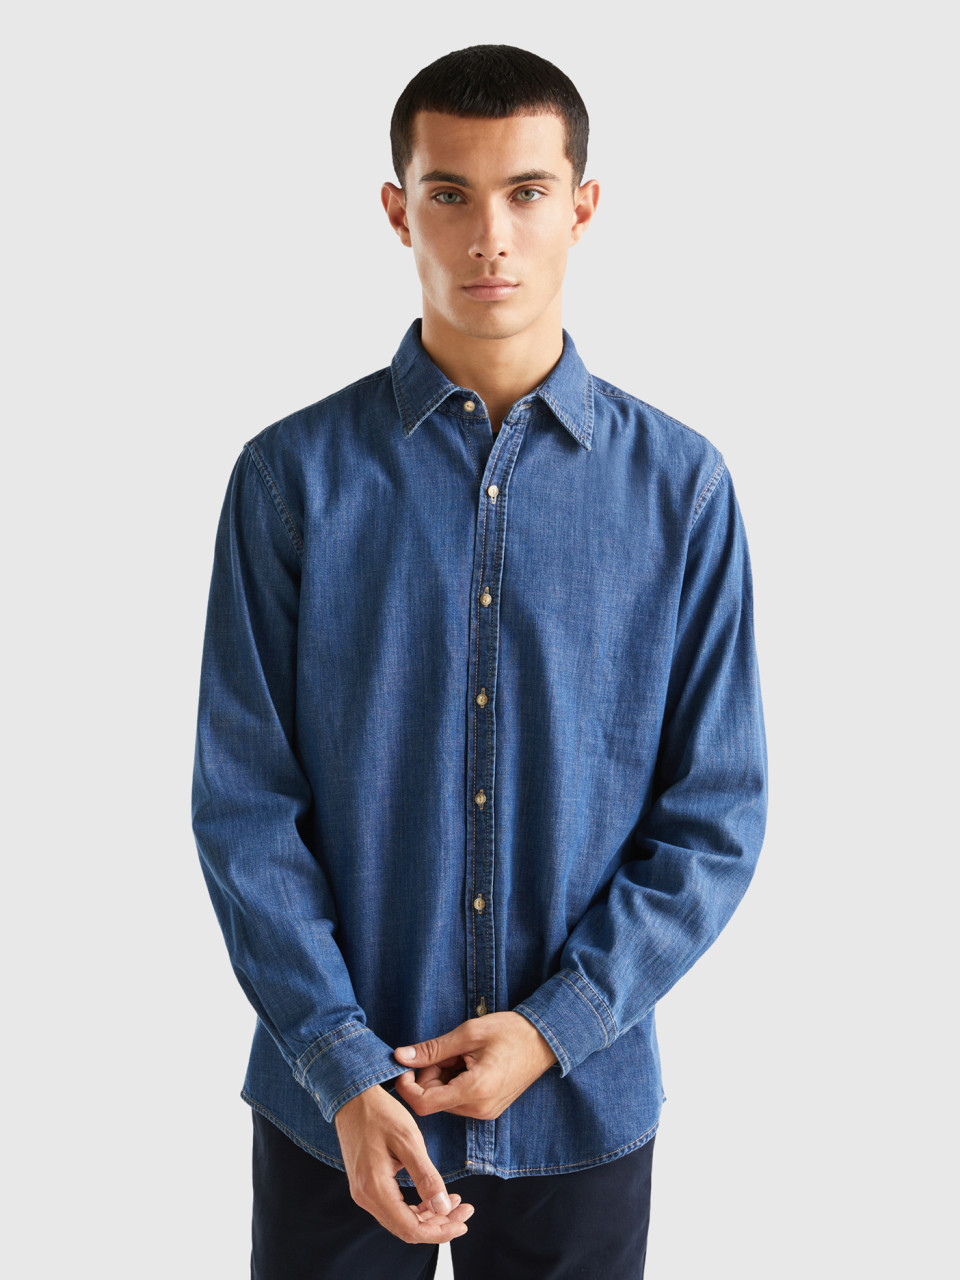 Benetton, Jean Shirt In 100% Cotton, Dark Blue, Men